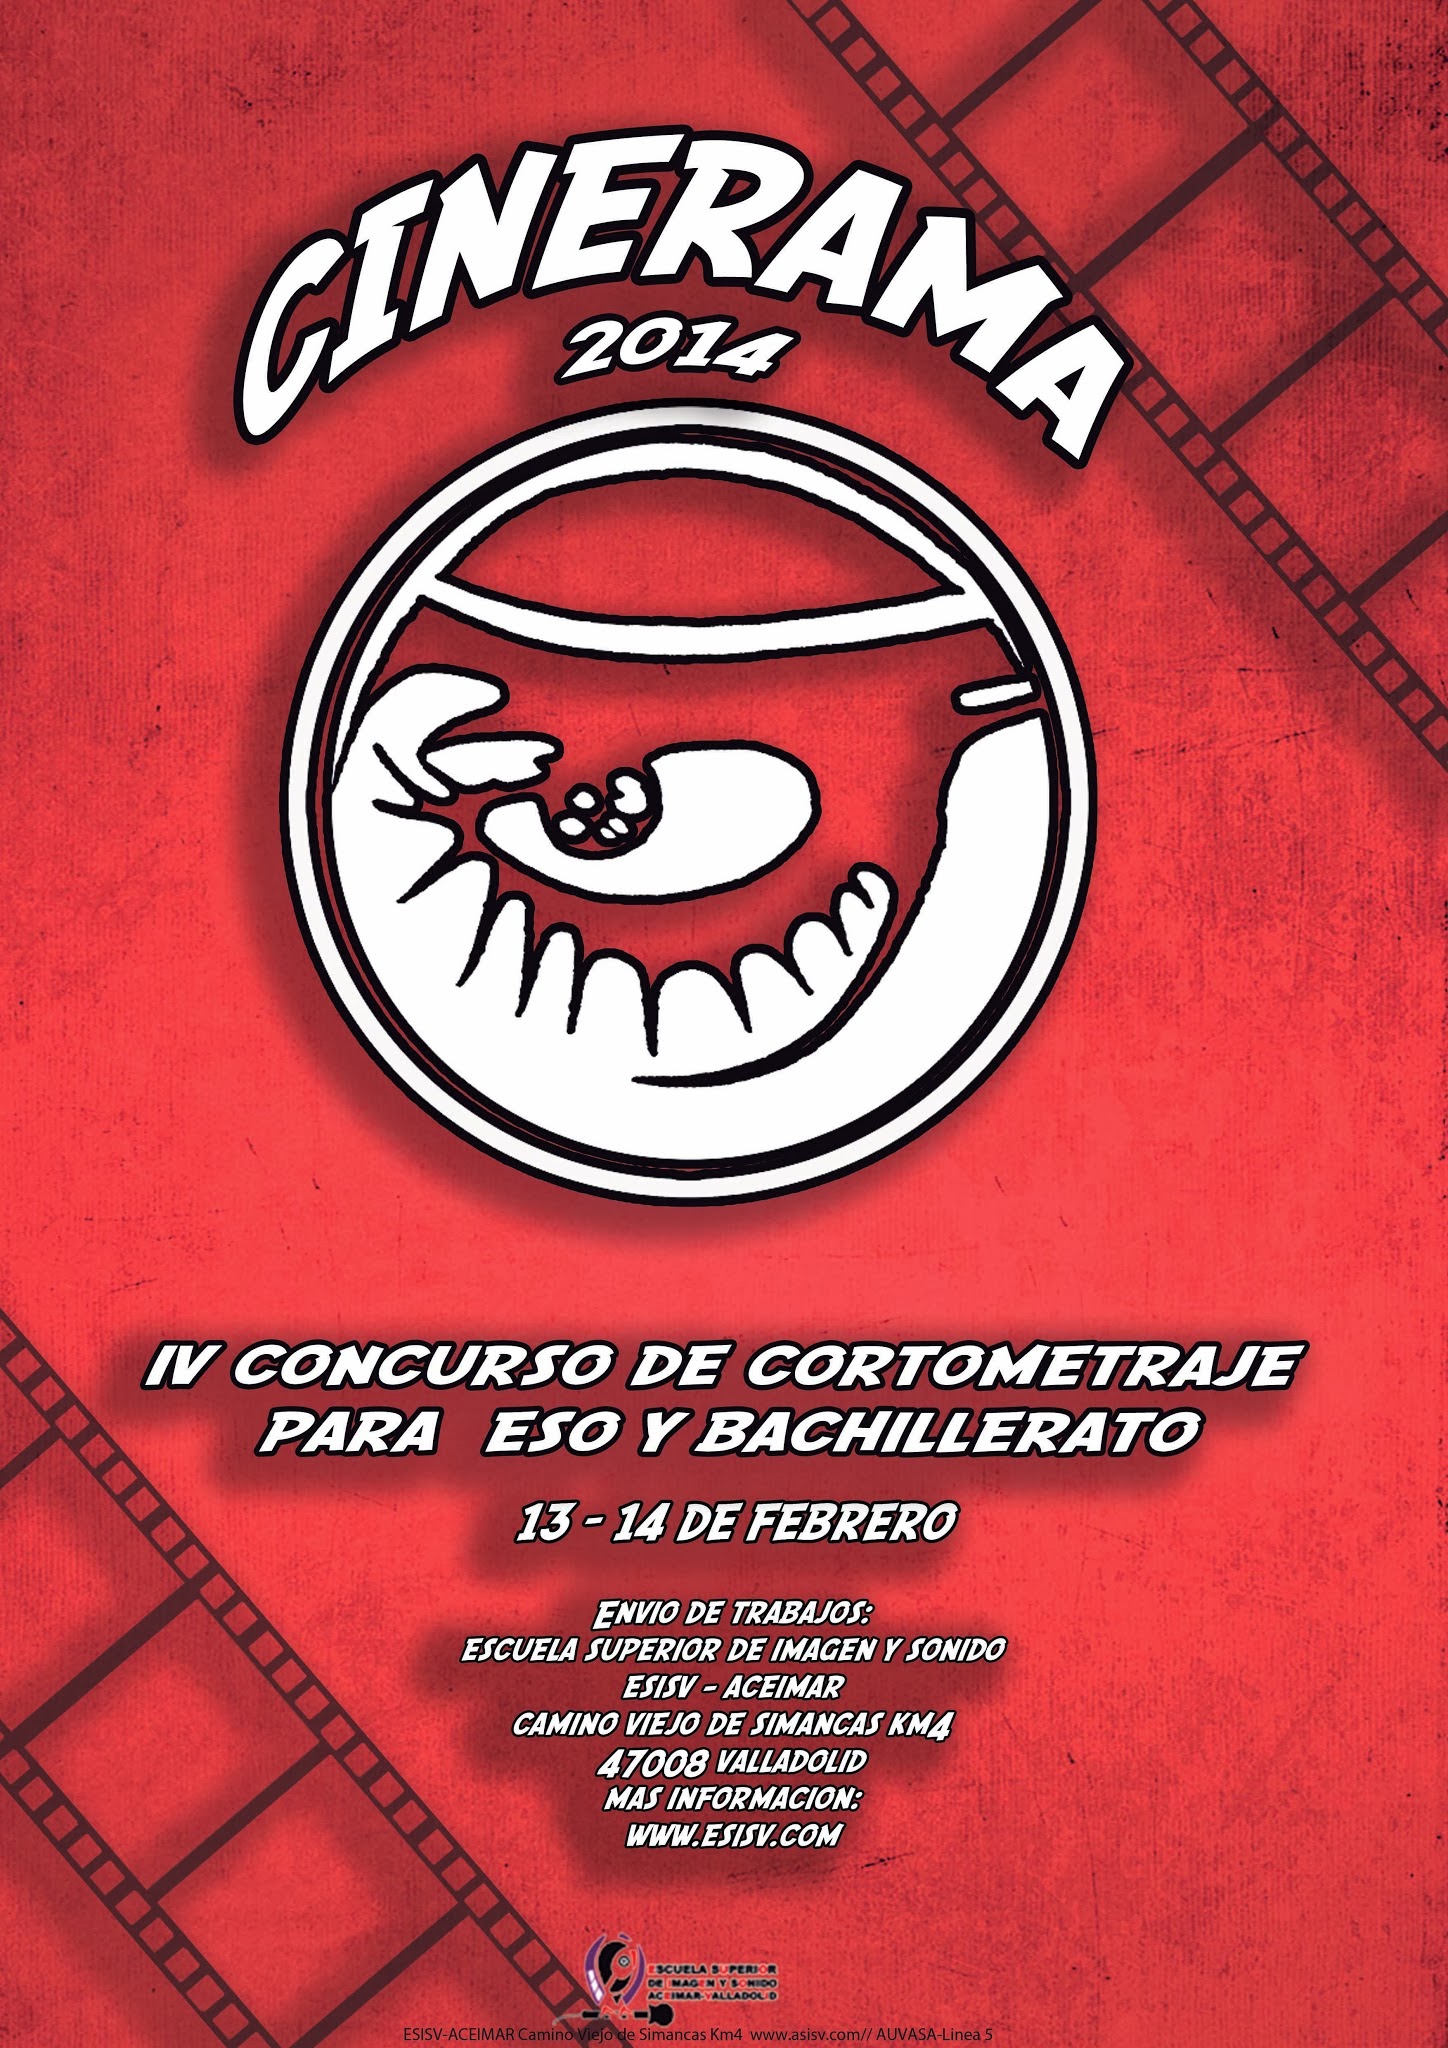 IV Concurso de Cortometrajes para ESO y Bachillerato CINERAMA 2014. 13 y 14 de febrero de 2014